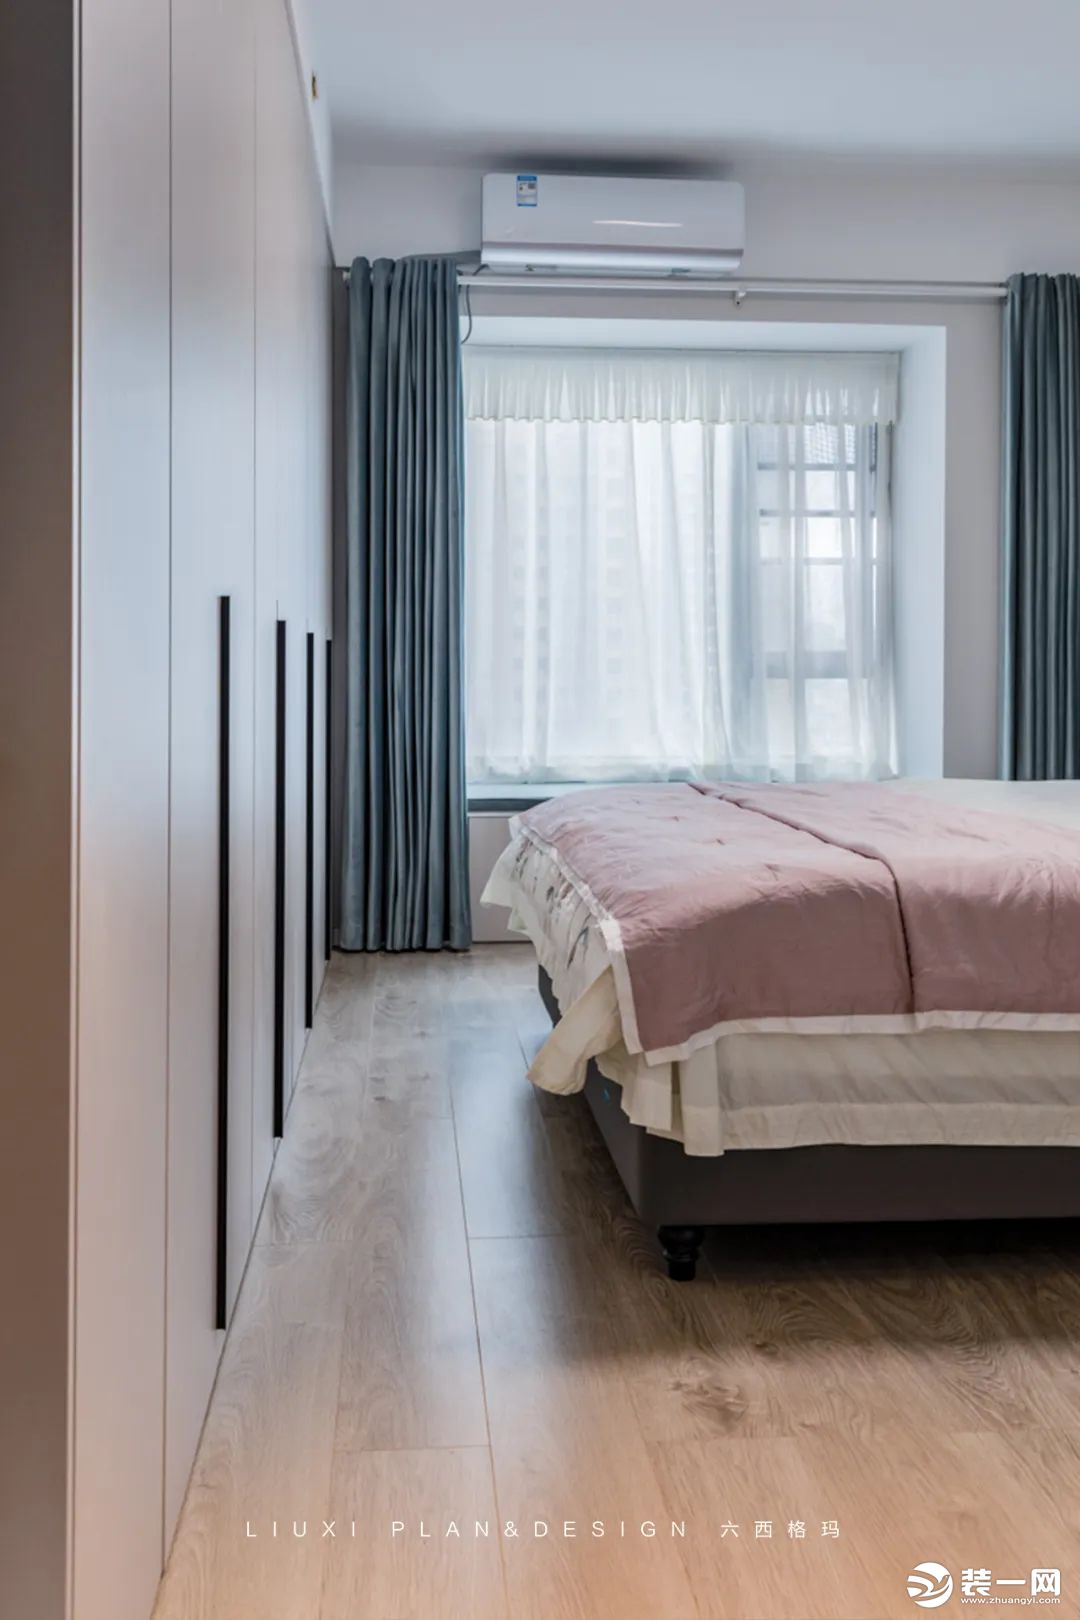 主卧设计用恬淡的粉+灰蓝配色，为空间注入恰好的居住温度。床尾做了一排通顶的衣柜，搭配1米长的黑色长条